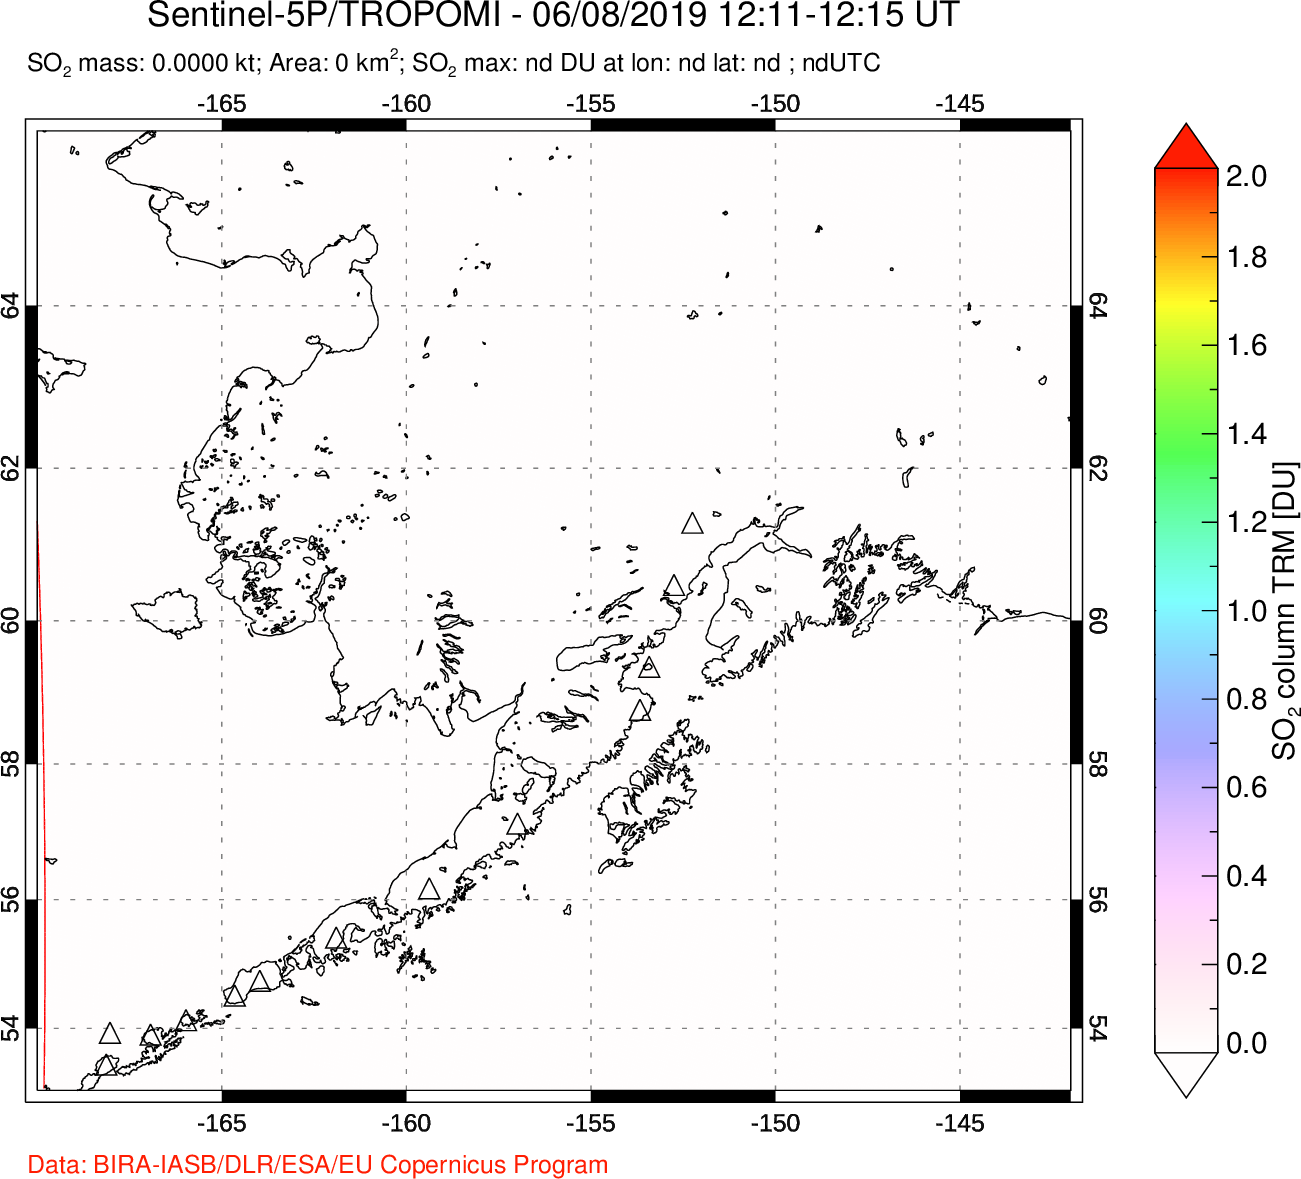 A sulfur dioxide image over Alaska, USA on Jun 08, 2019.